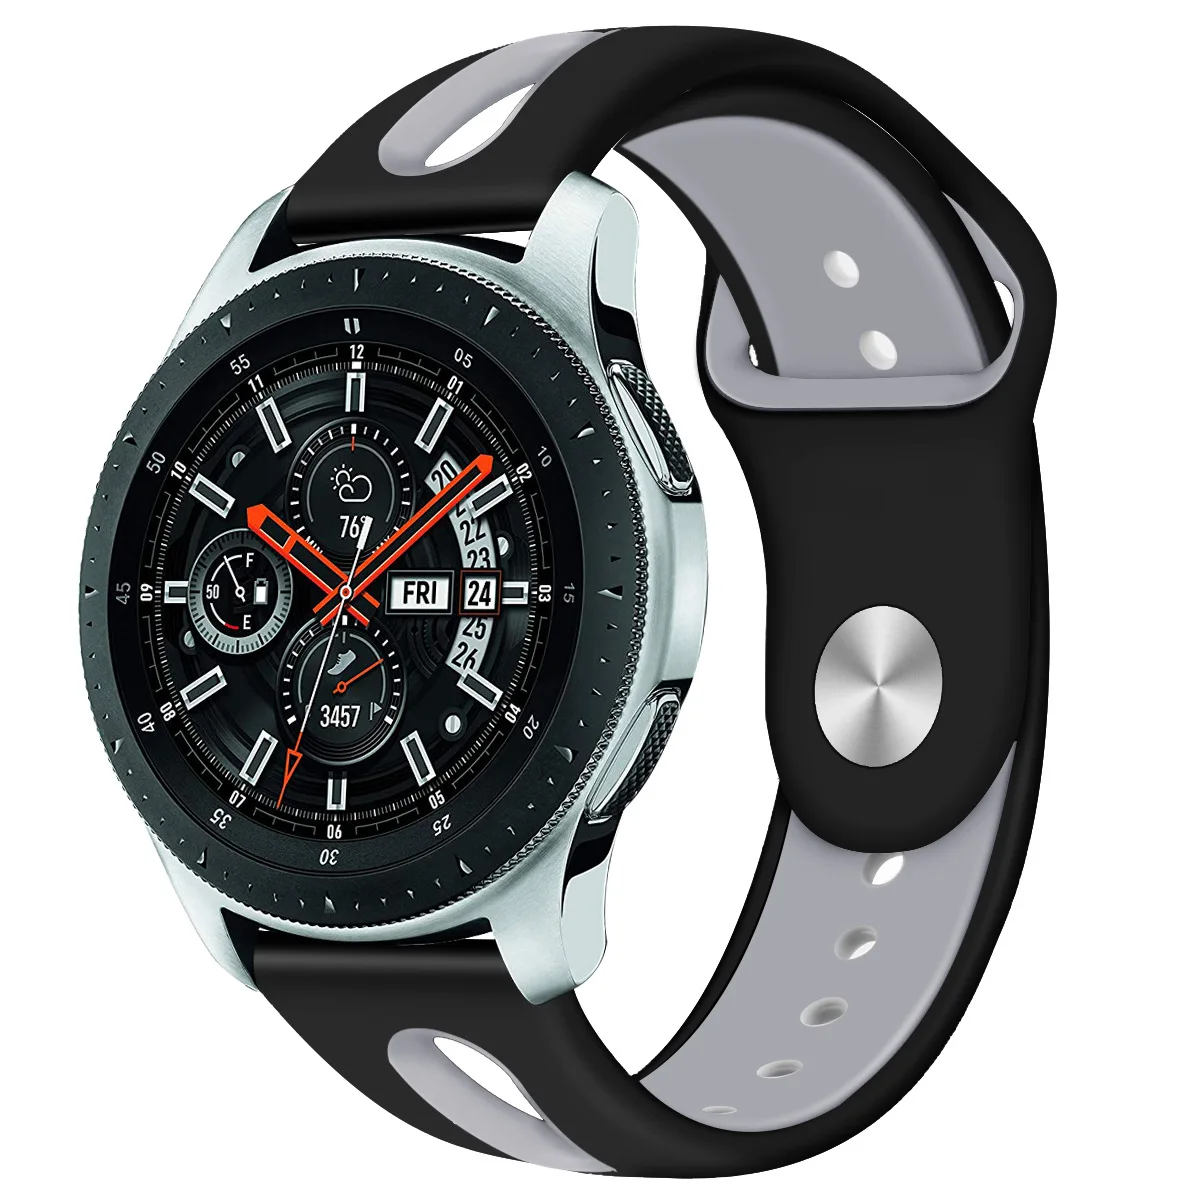 Samsung galaxy watch r800. Samsung Galaxy watch SM-r800 46mm. Galaxy watch SM-r800. Galaxy watch 46mm SM-r800.